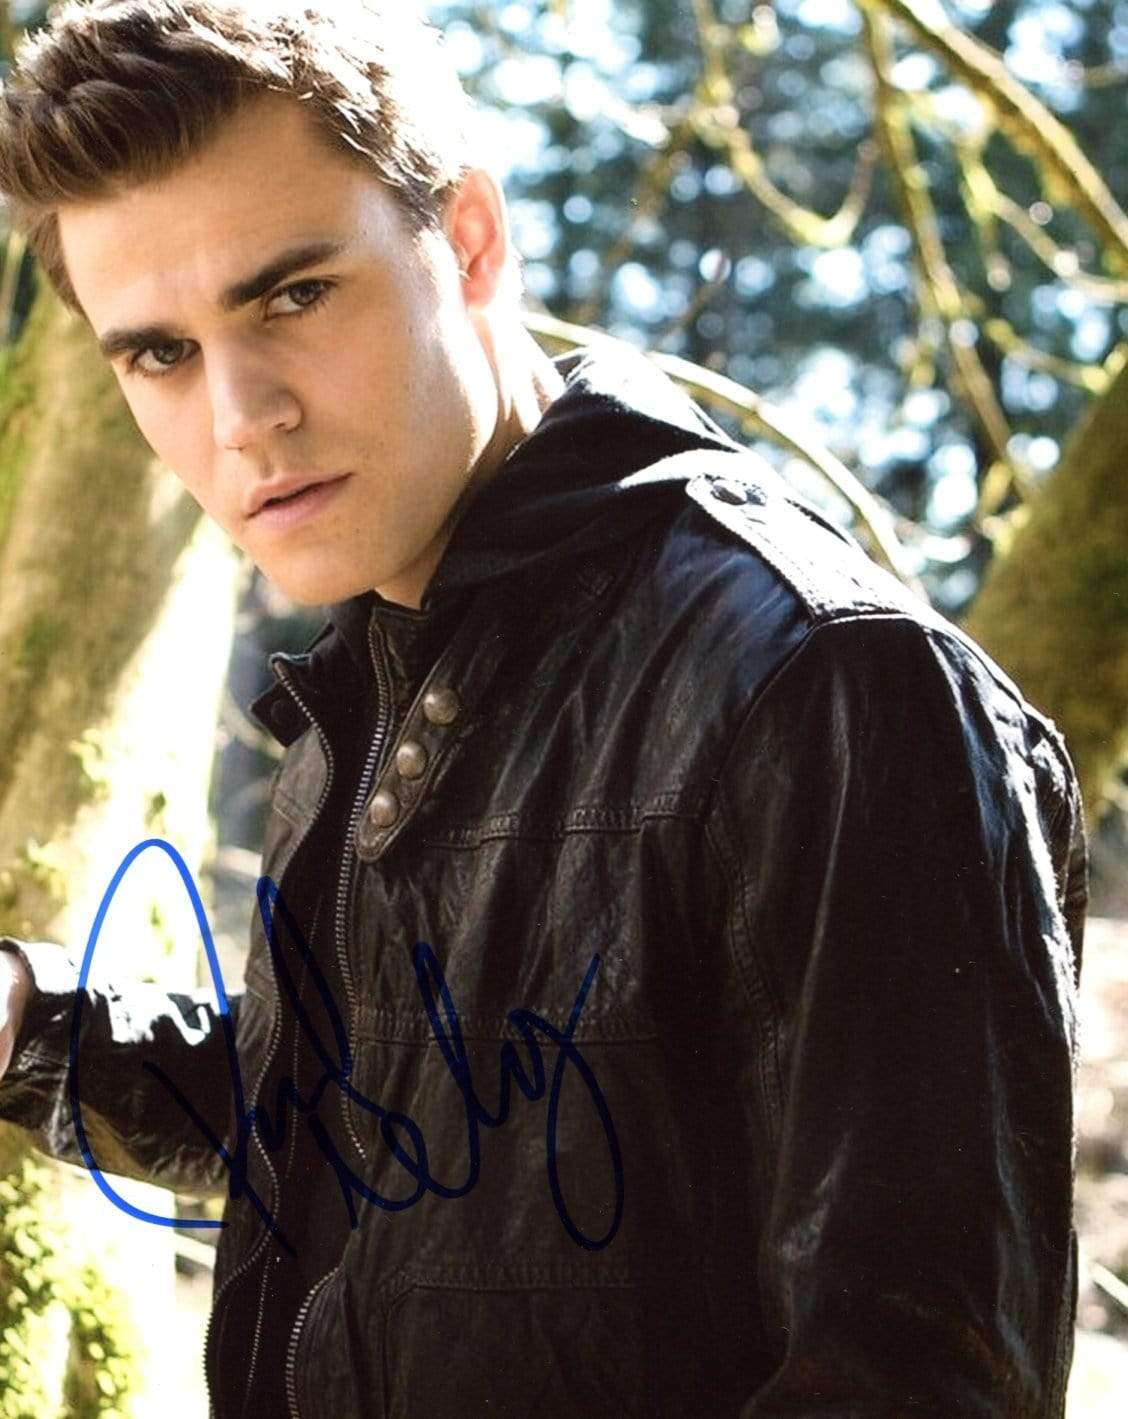 Wesley, Paul autograph